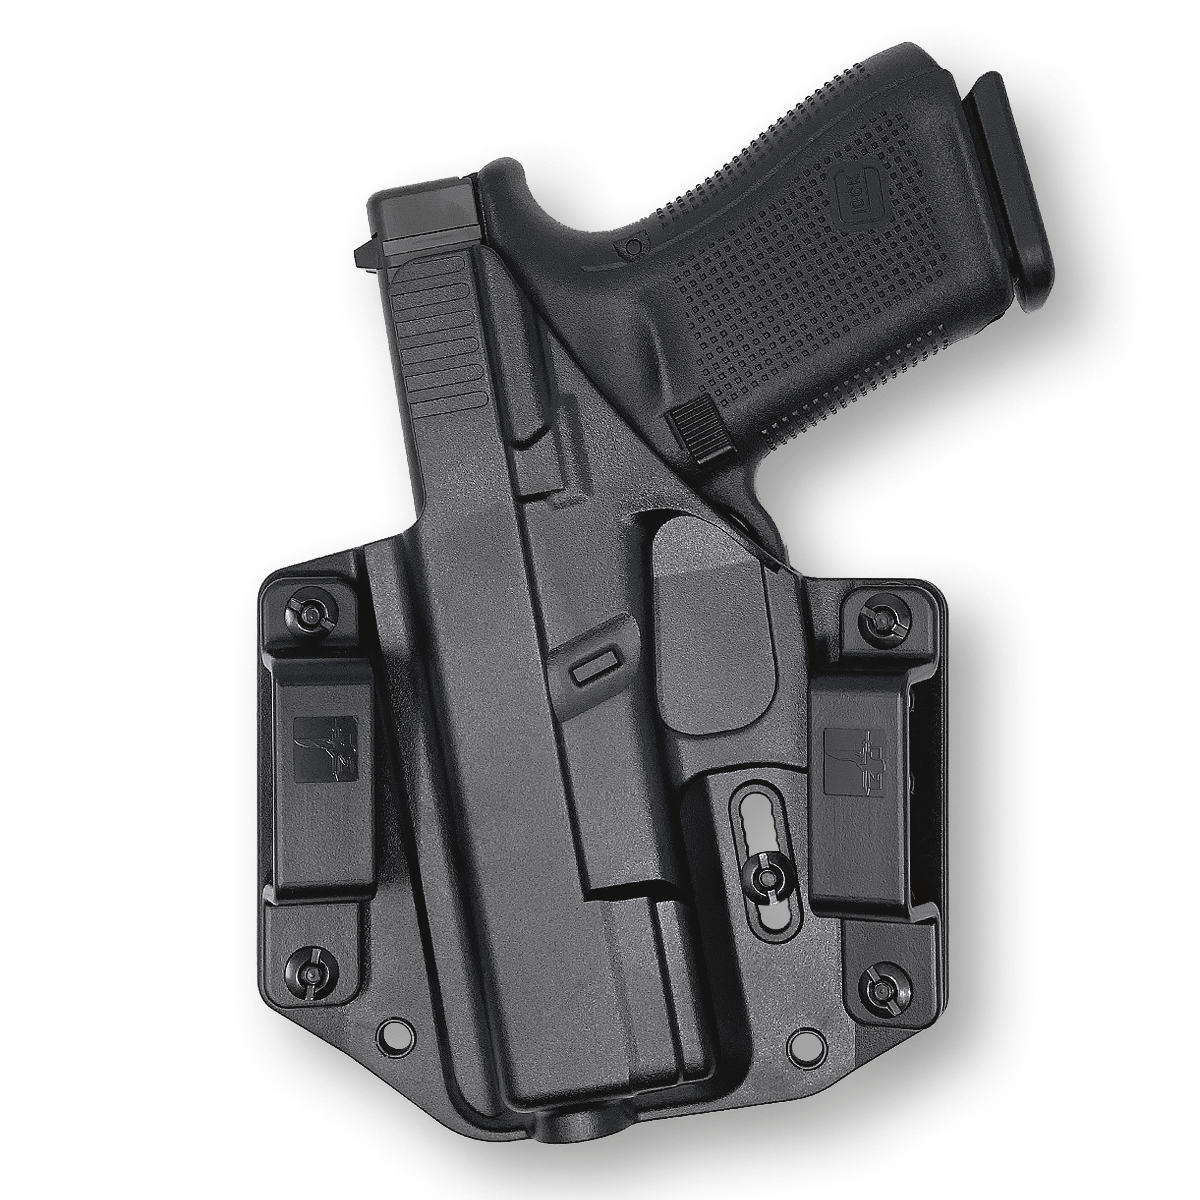 Glock 19 Gen 5, Best Glock Accessories